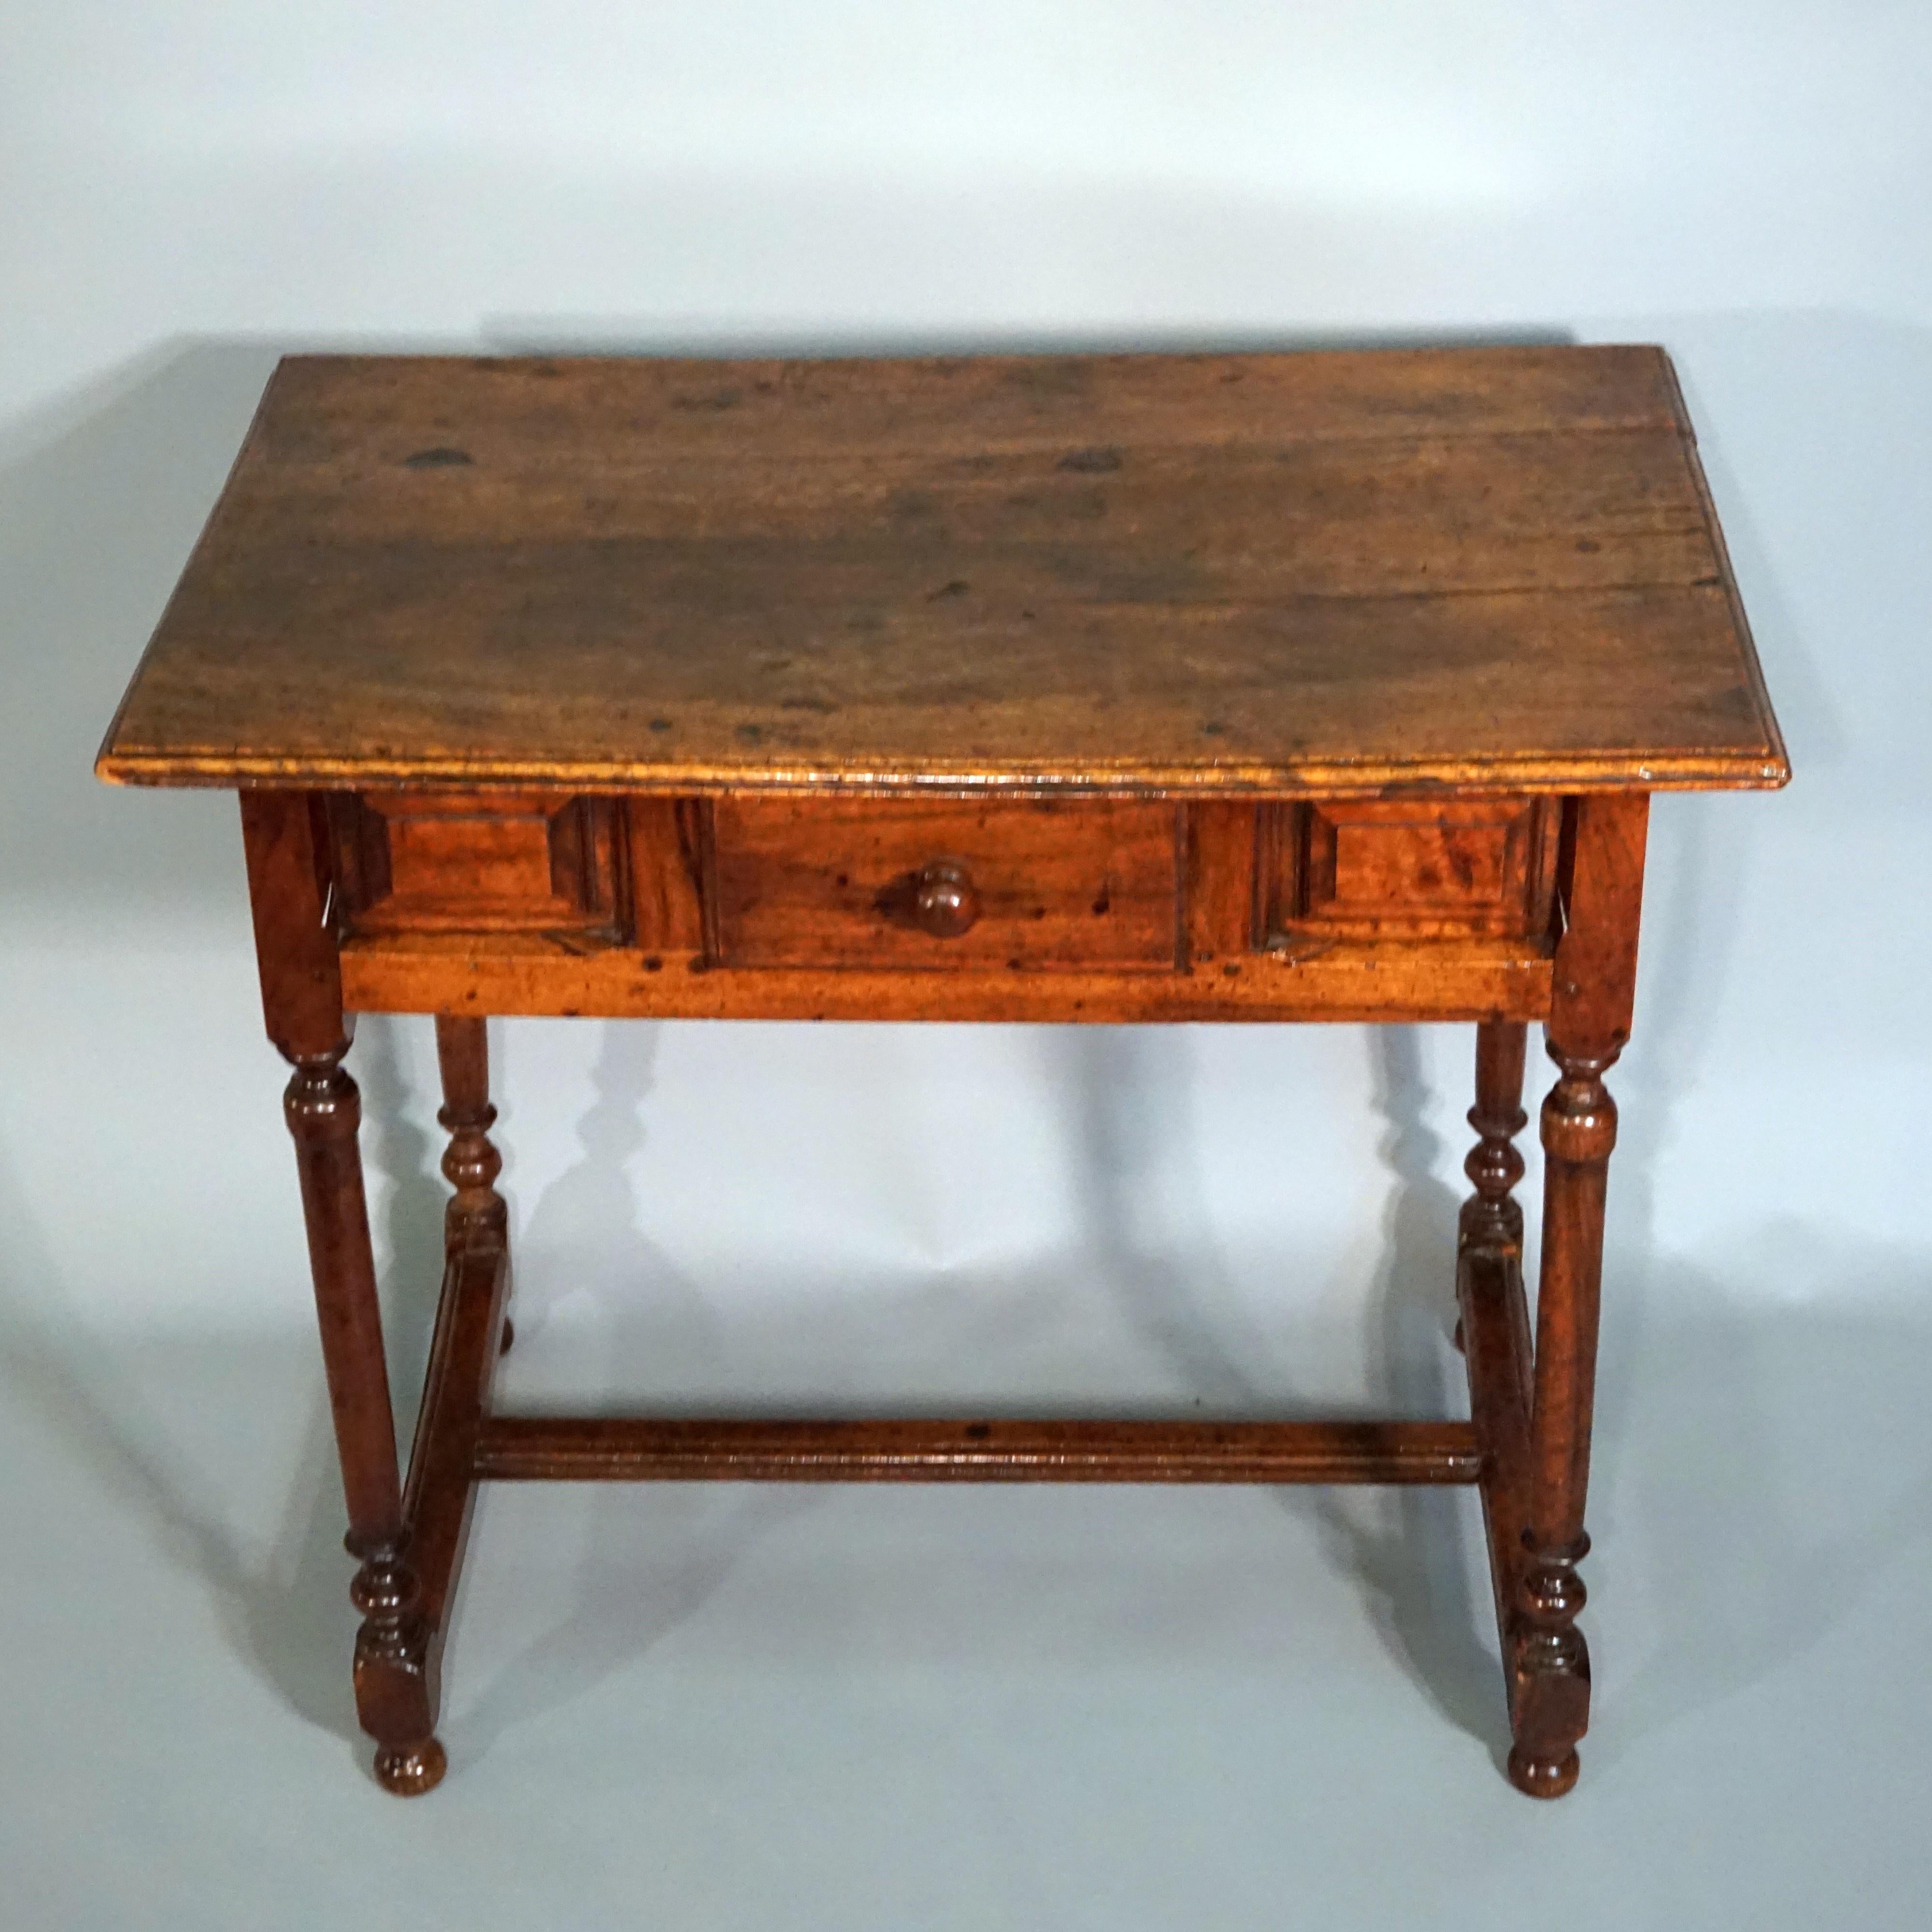 17th century oak Dutch side table, turned.